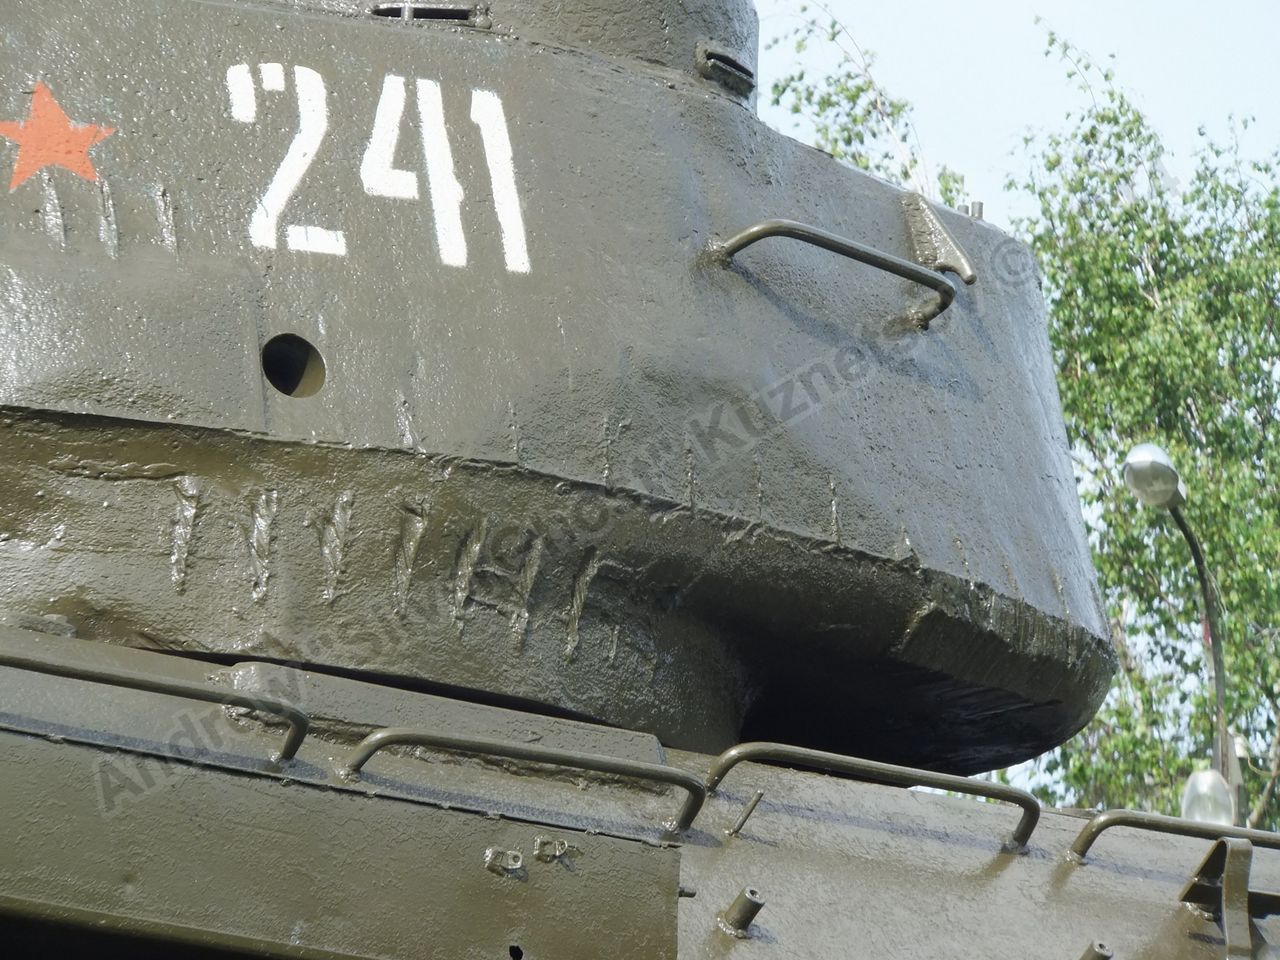 T-34-85_Vyazma_0044.jpg